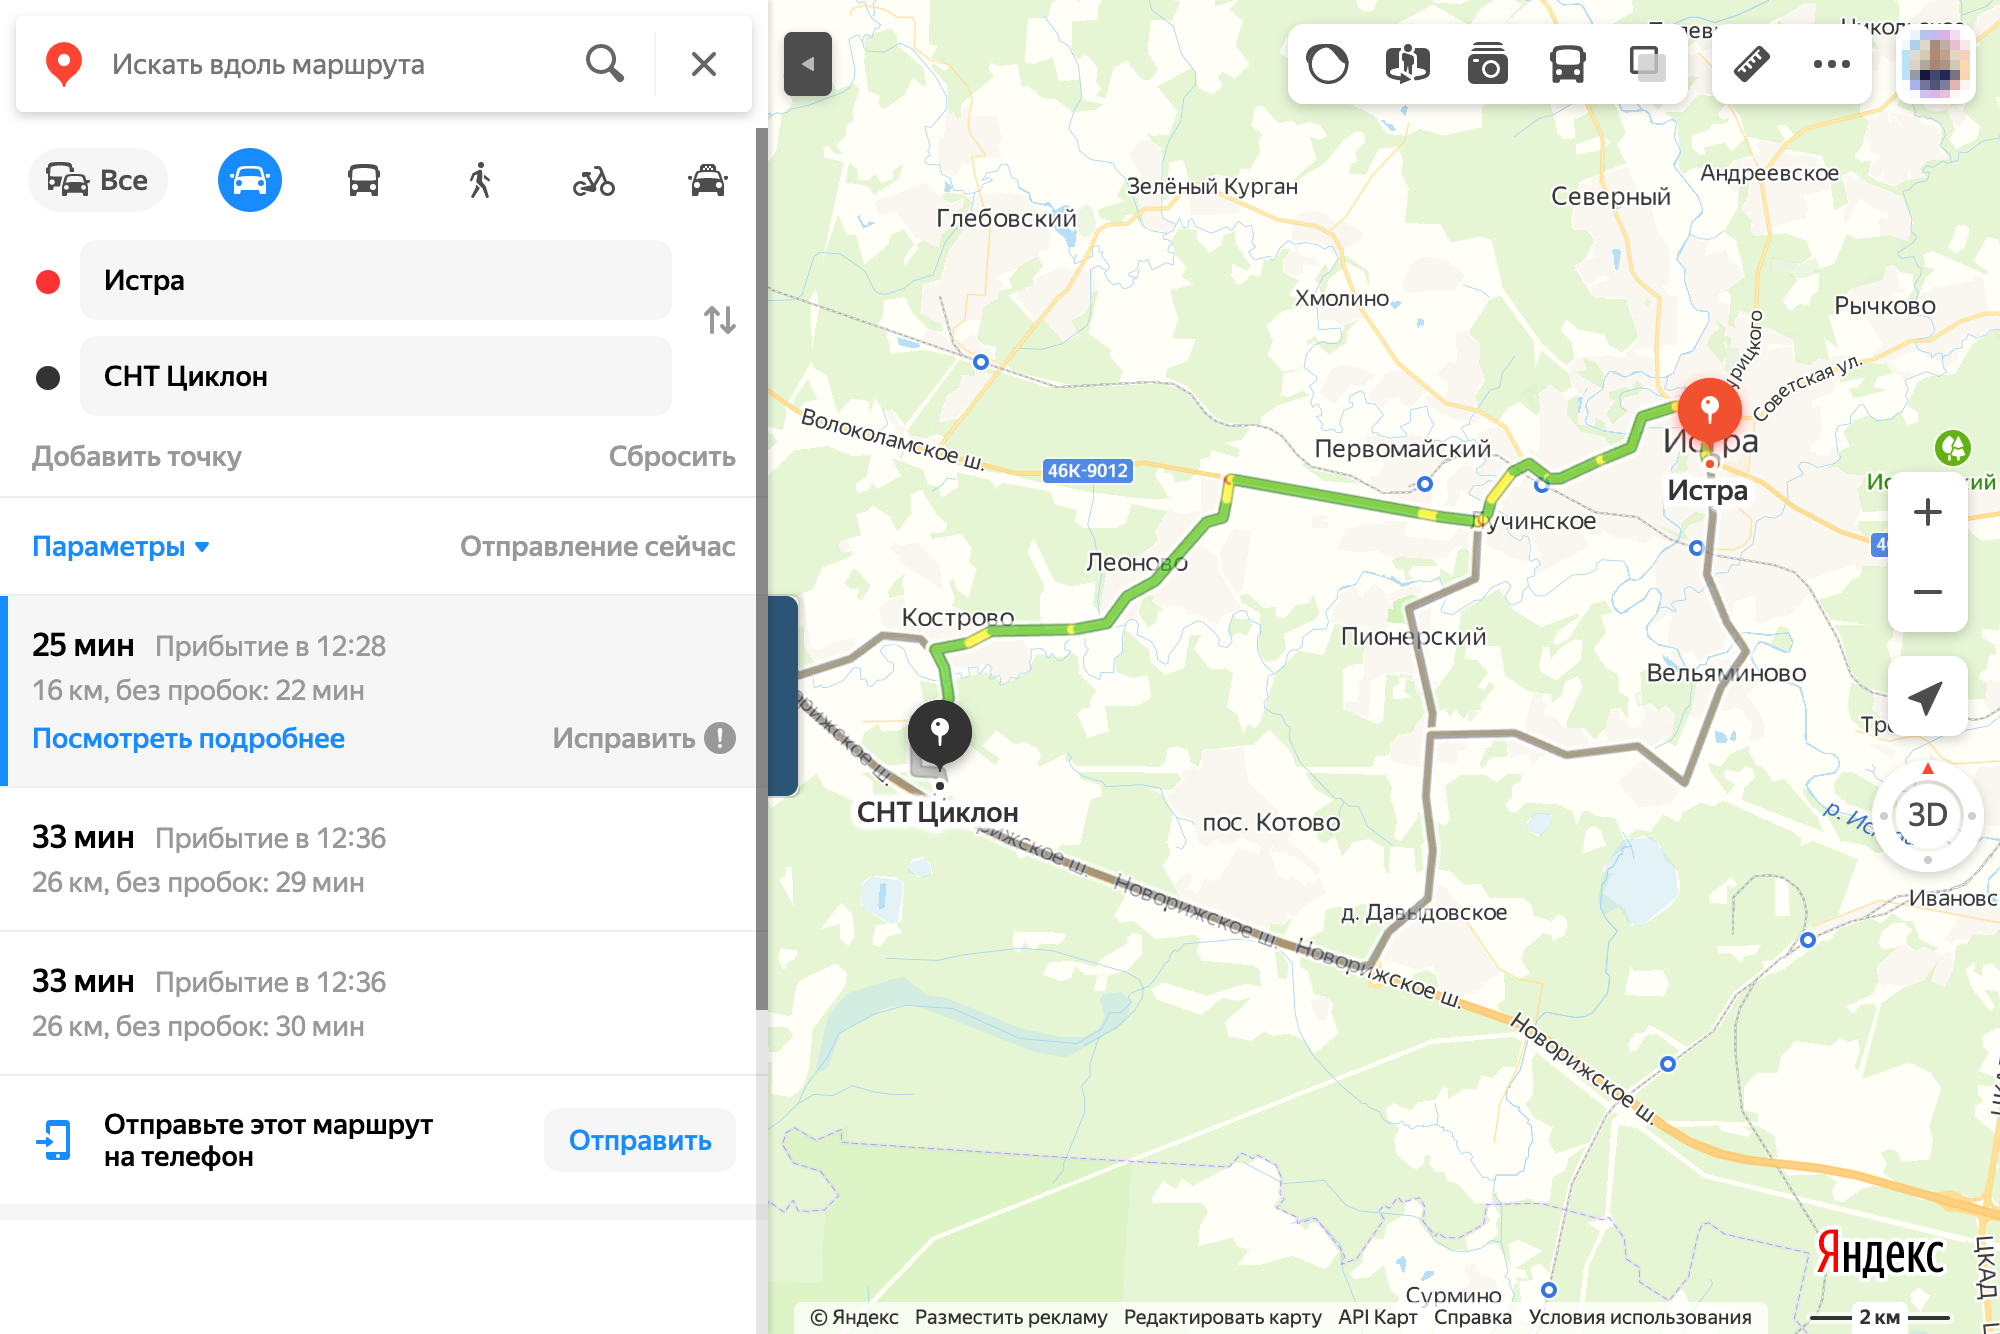 «Яндекс-карта», например, предлагает три маршрута от г. Истра Московской области до СНТ «Циклон». По каждому маршруту указаны реальные расстояния и время в пути без пробок. Здесь можно посмотреть участки, для которых есть панорамы местности, если активировать плашку «Панорамы улиц и фотографии». Камеру можно вращать в любой точке на 360°